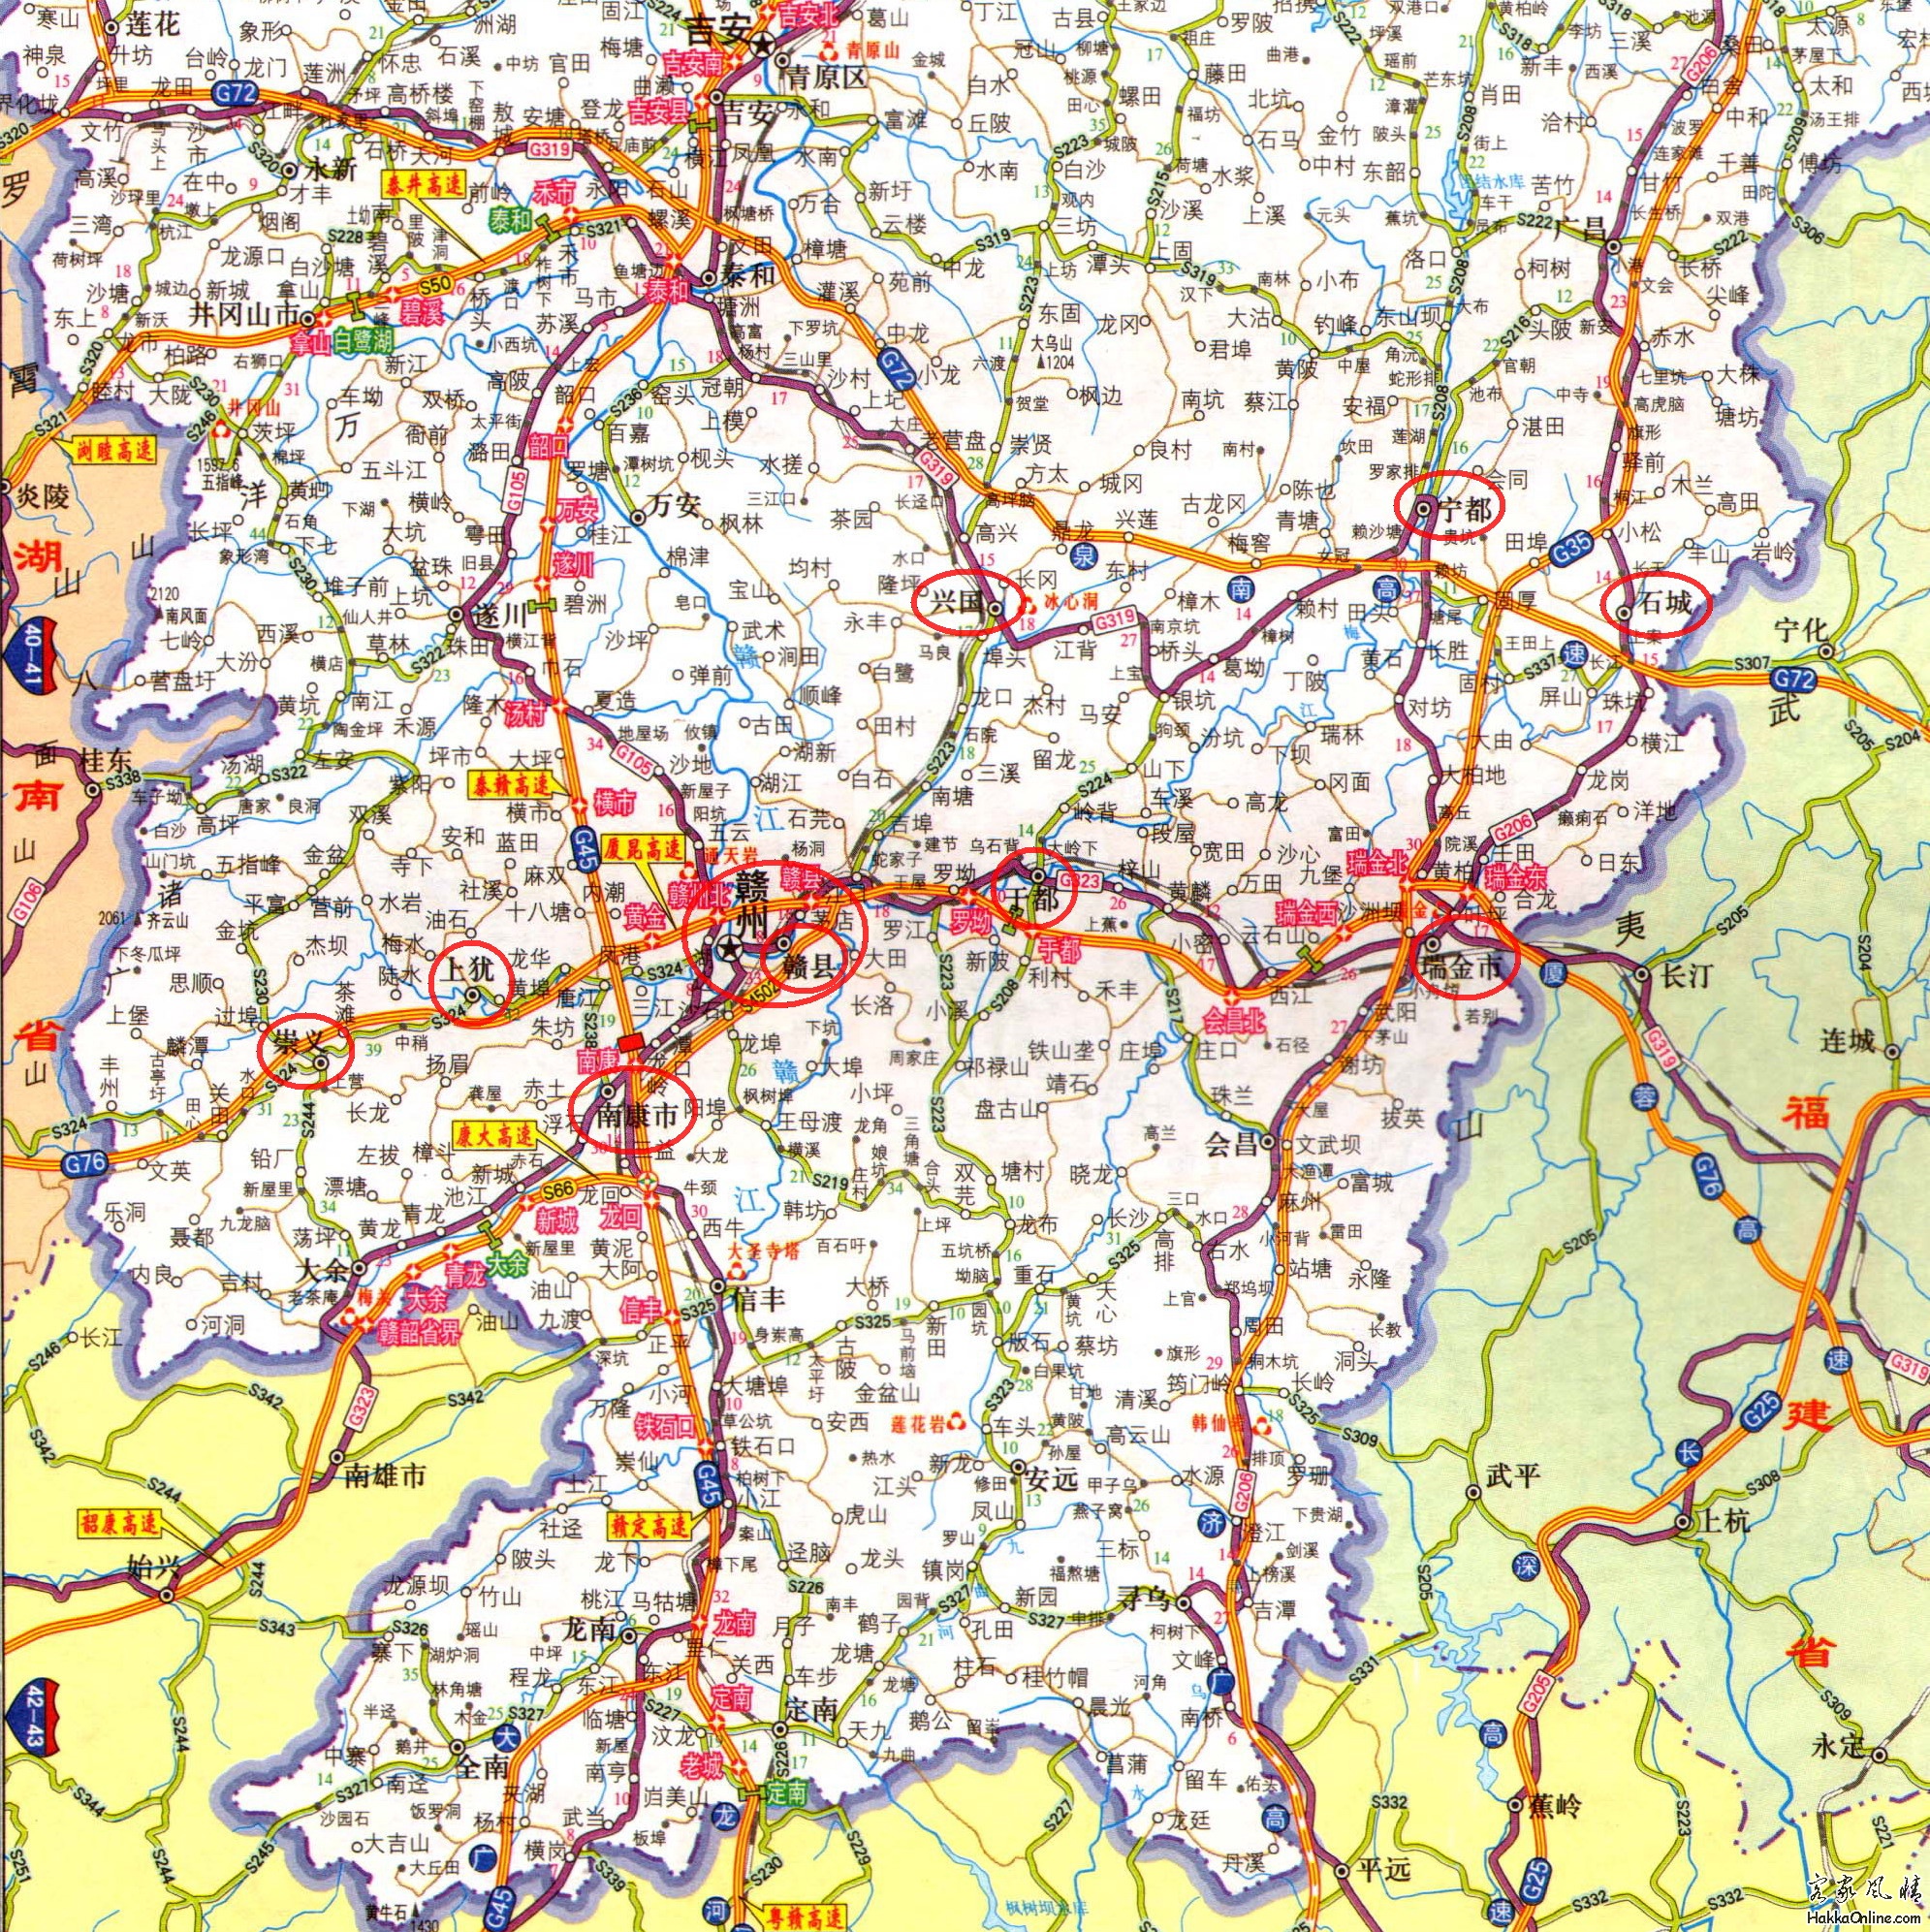 赣南地区G72 G76高速公路路线图 2013年.jpg